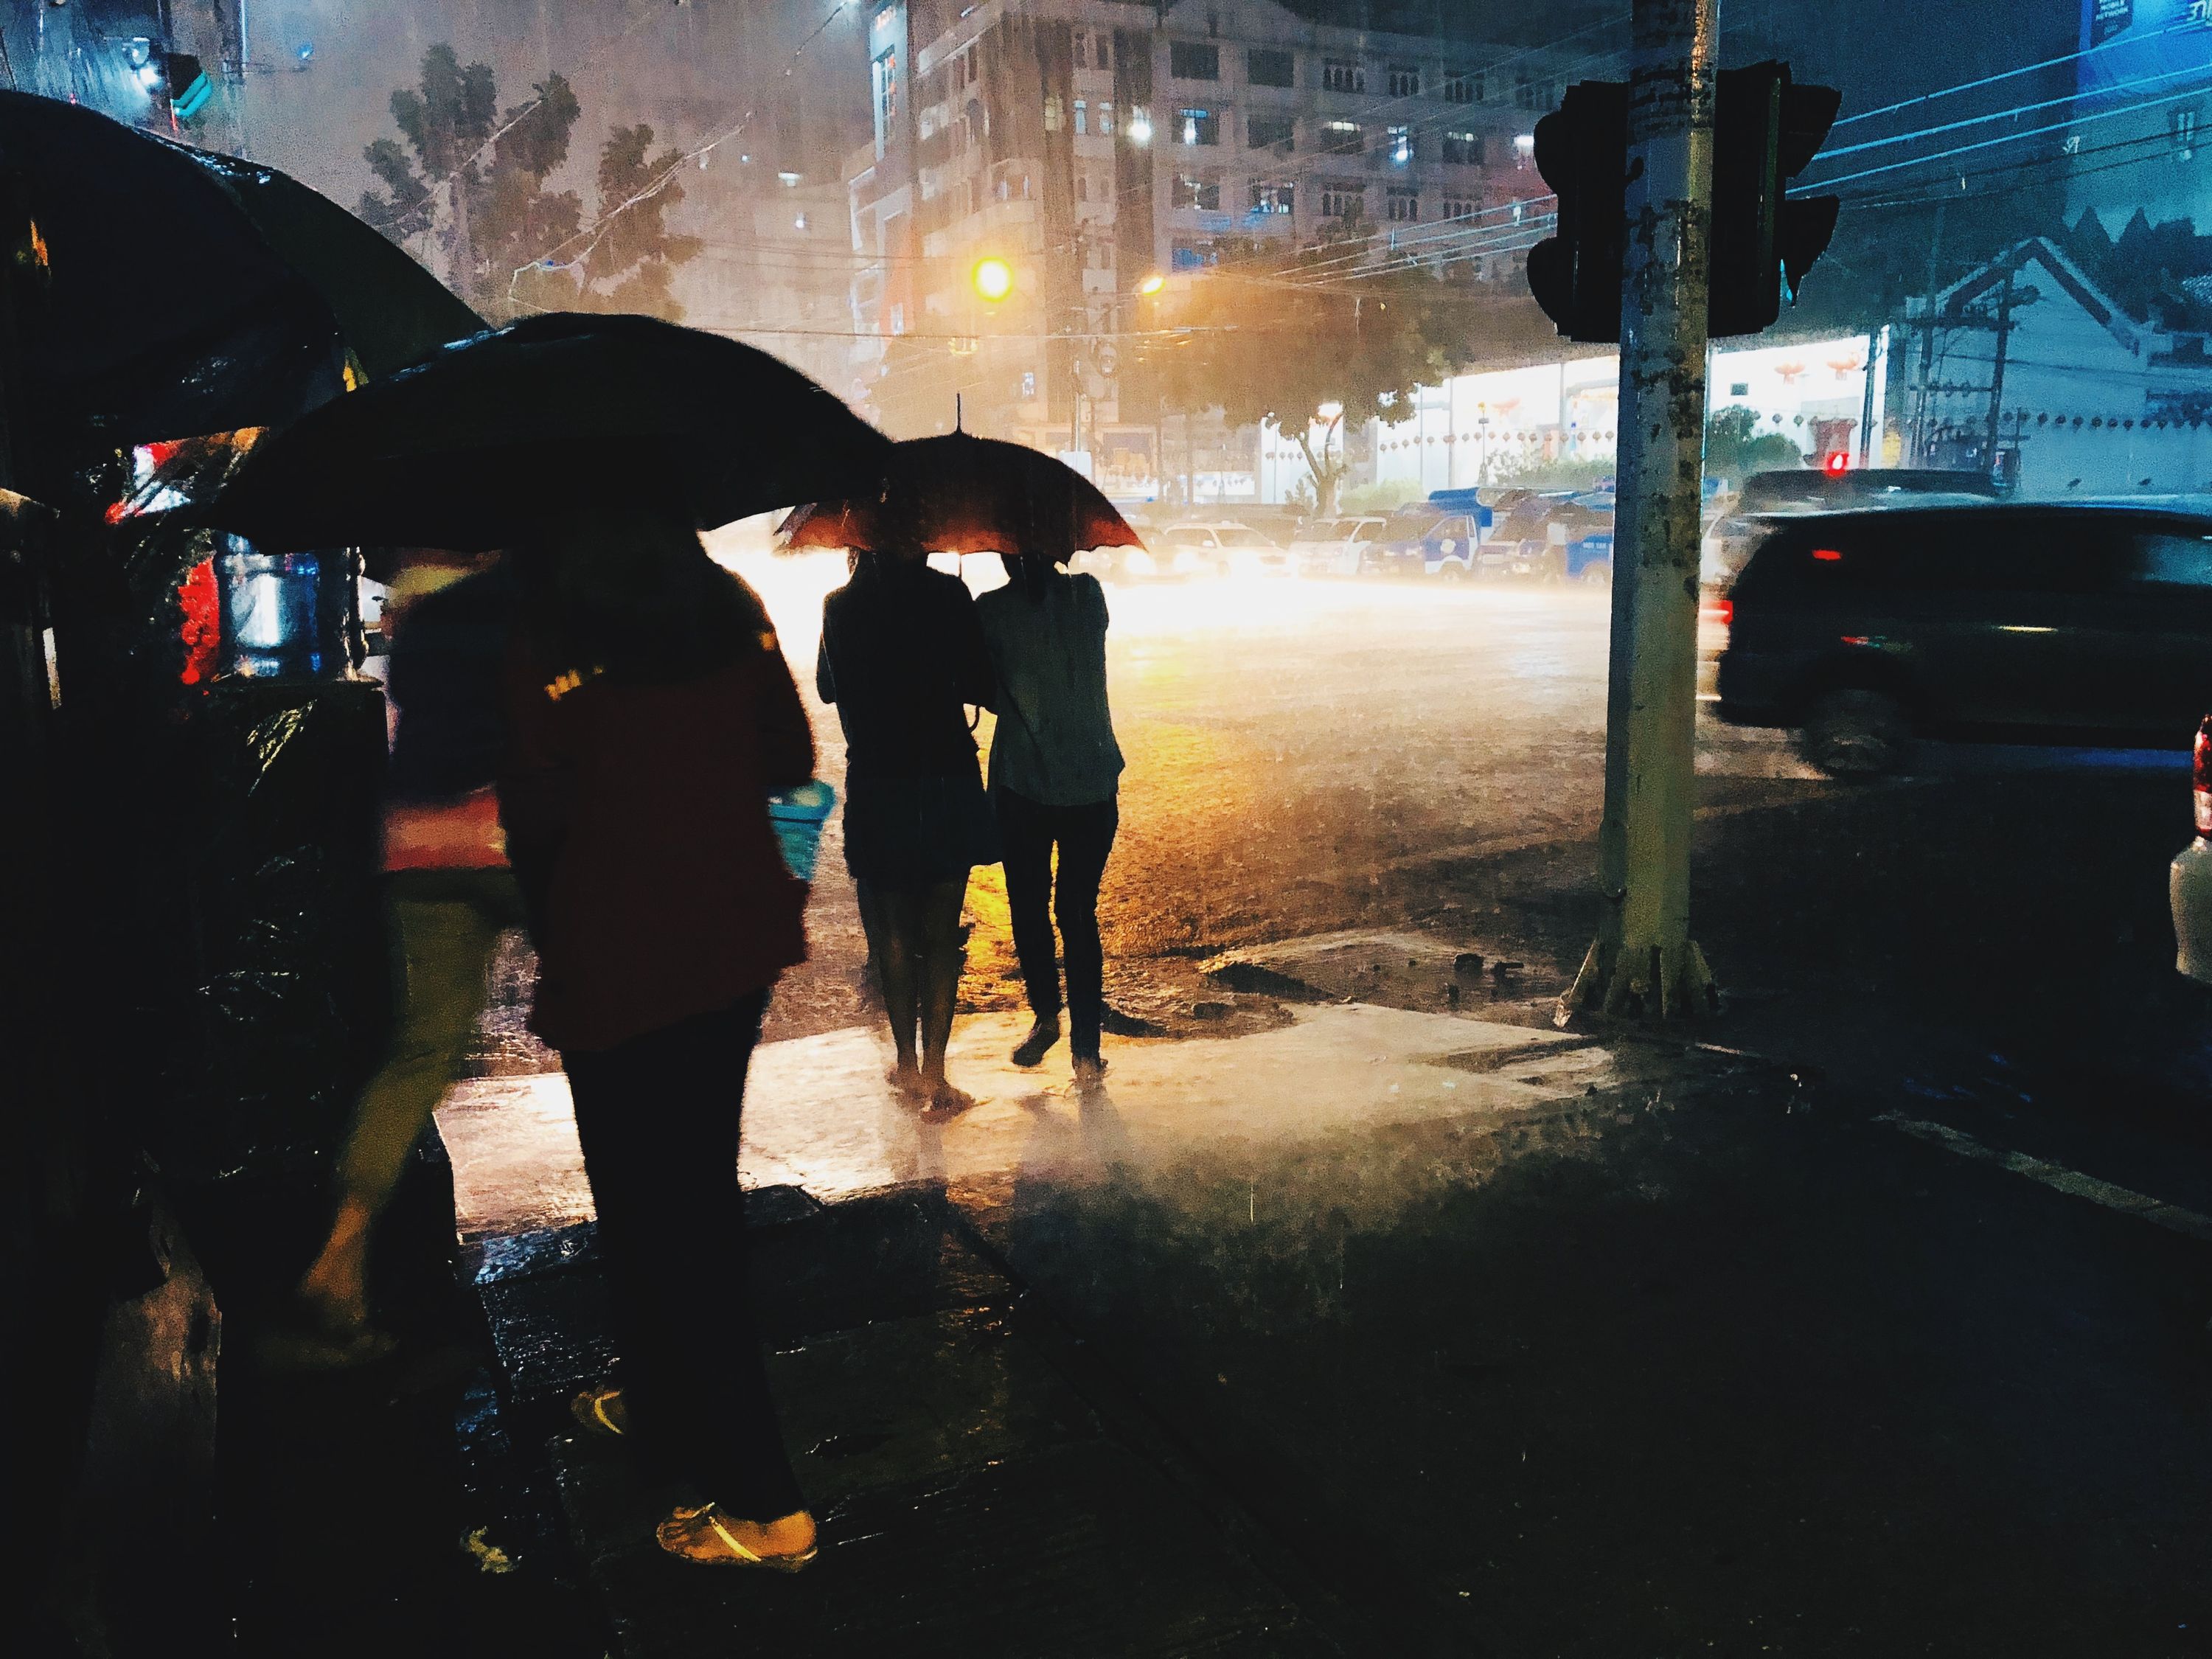 Rainy night in Yangon, Burma.